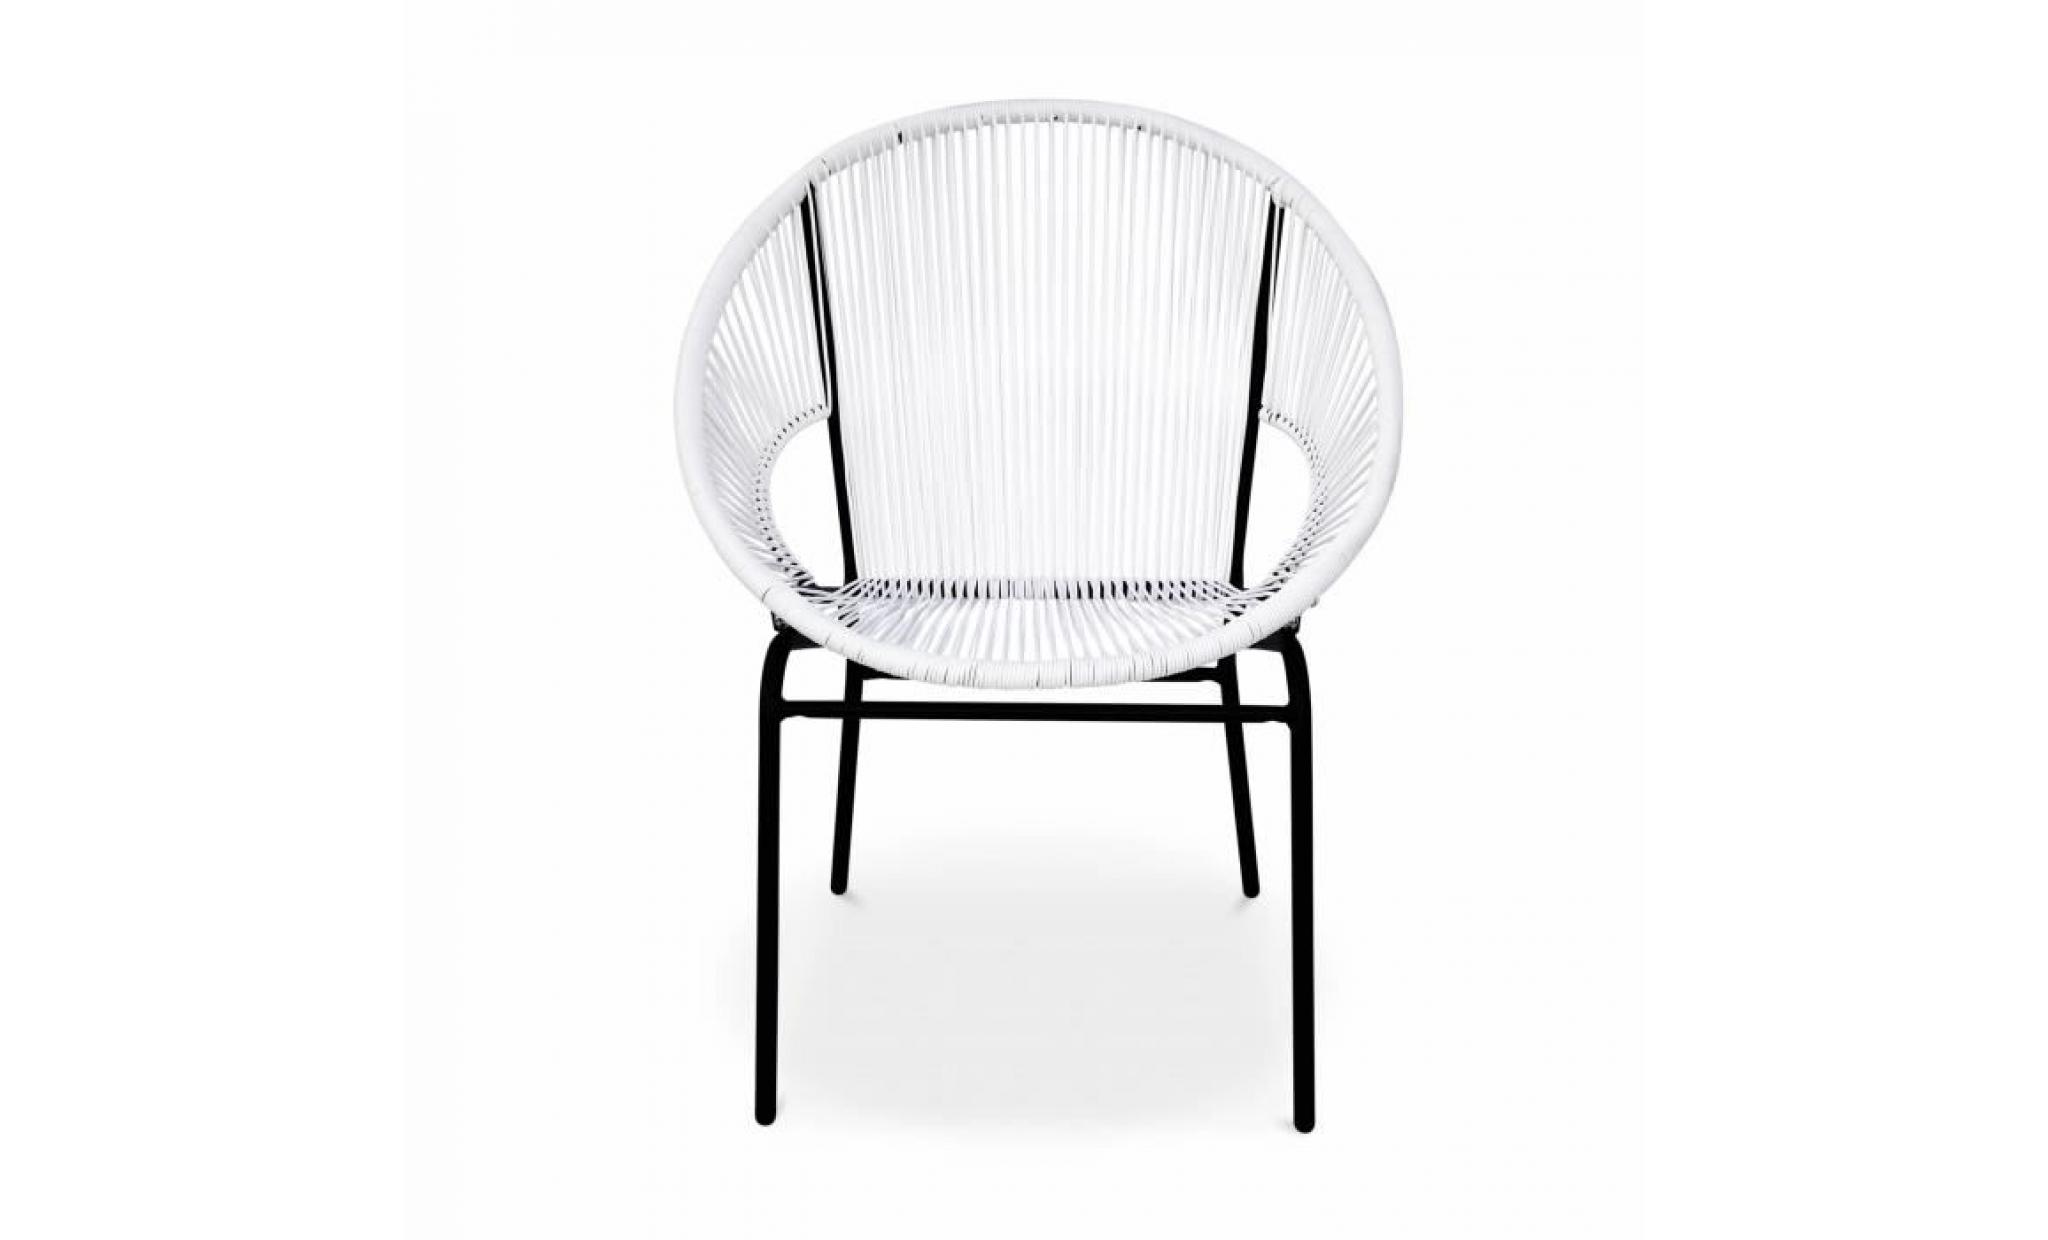 2 fauteuils design   mexico blanc   fauteuils design cordage pvc par lot de 2 pas cher